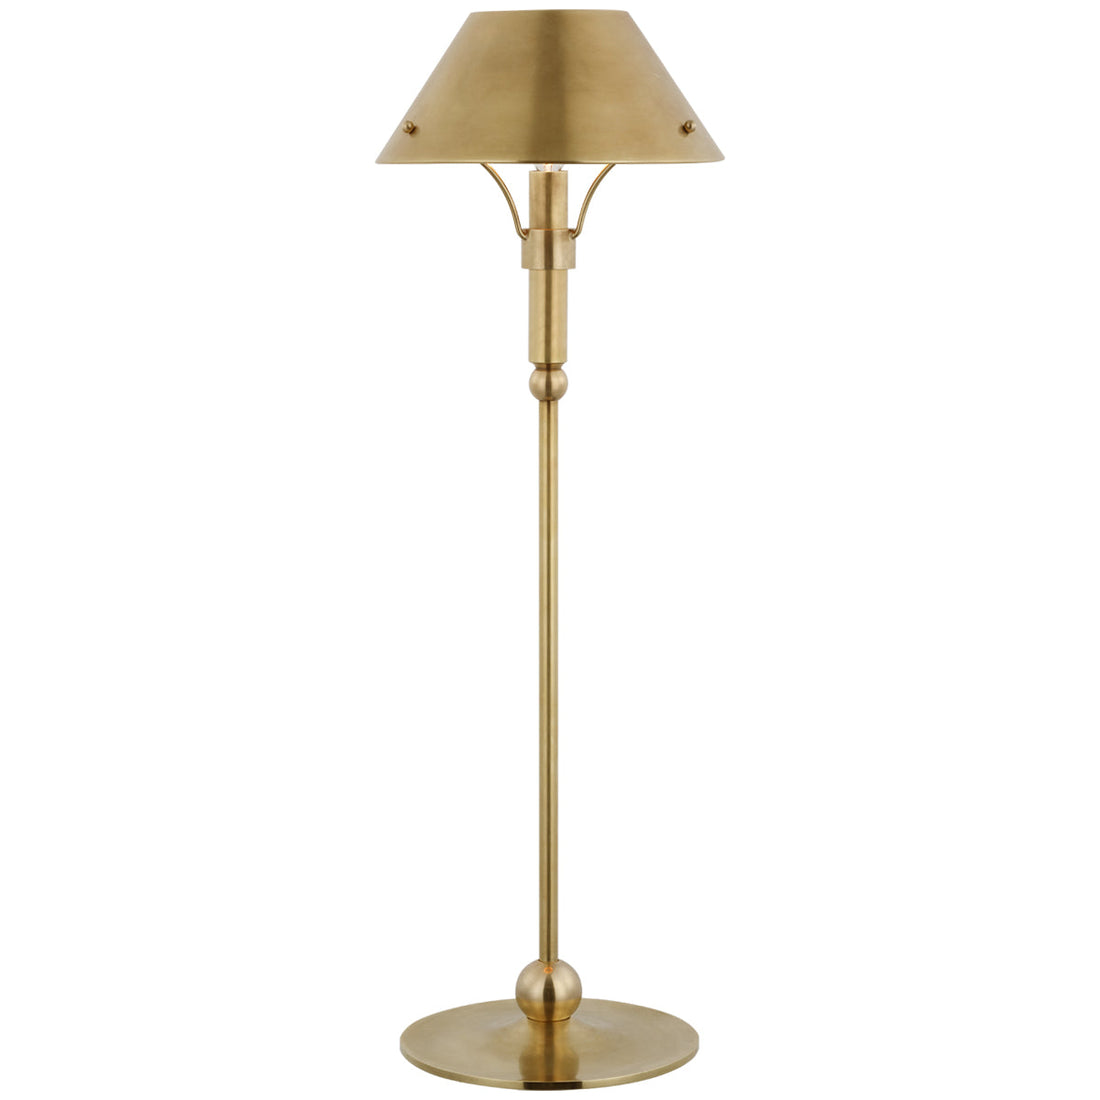 Visual Comfort Turlington Medium Table Lamp